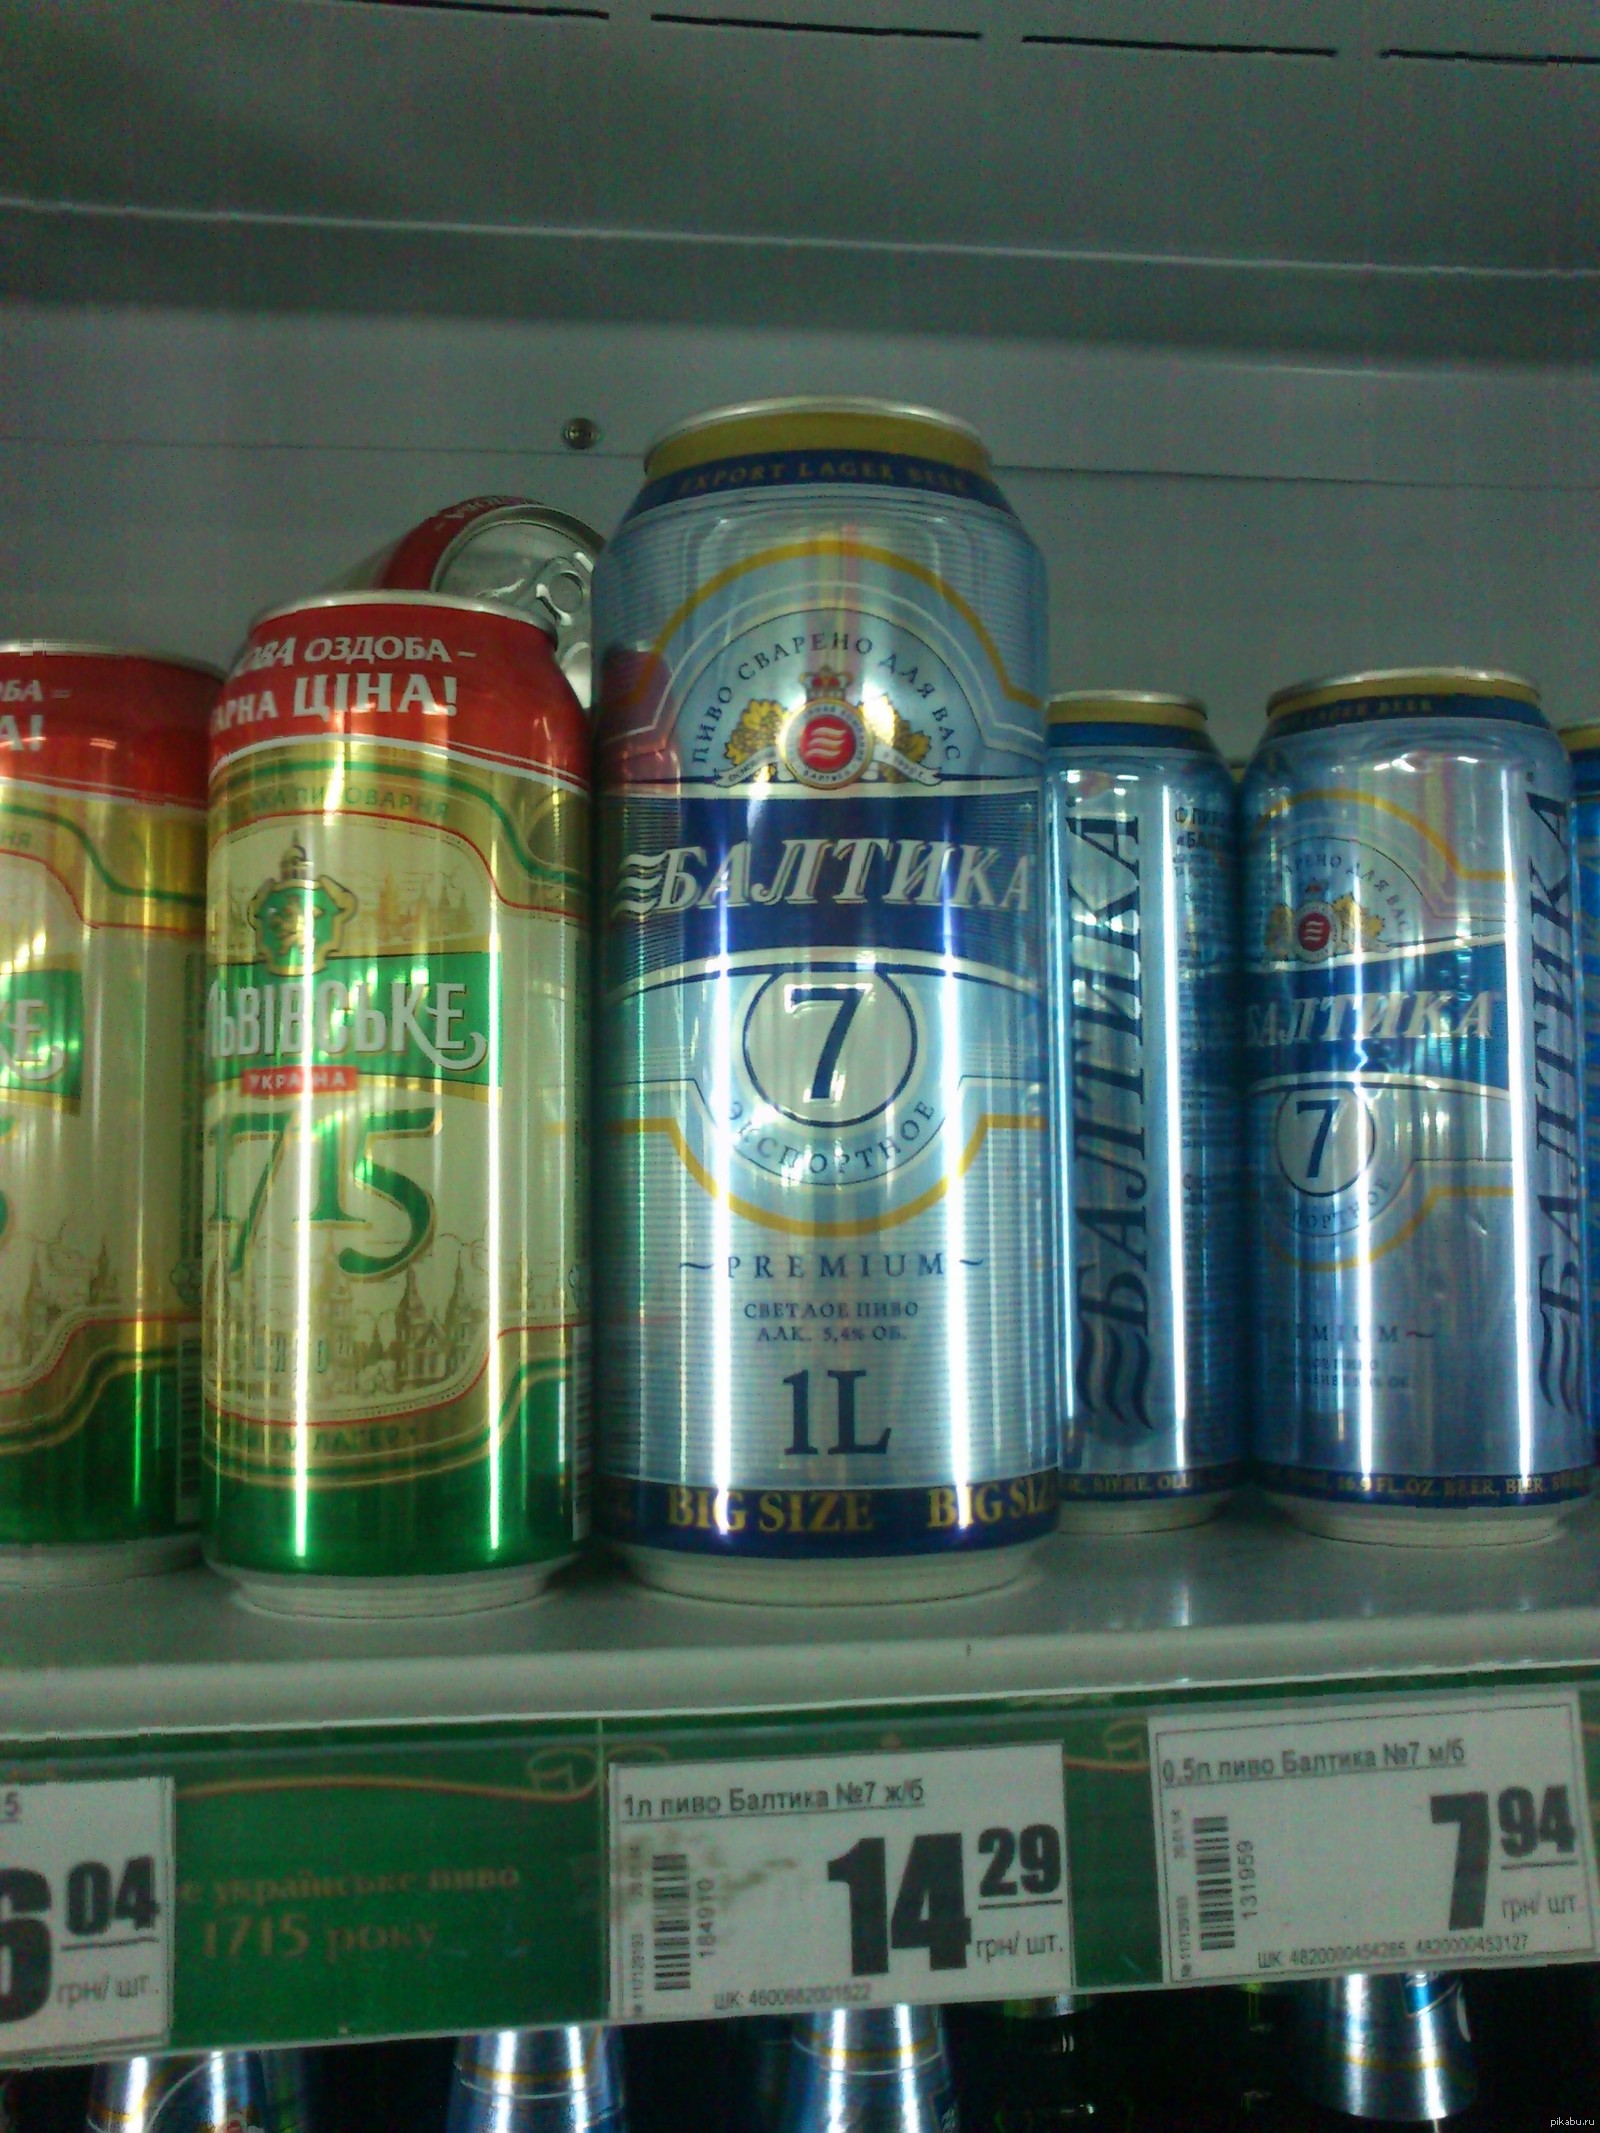 Пиво в банке купить в москве. Пиво 1 литр жестяная банка Балтика. Пивные банки. Пиво в банках. Пиво в жестяных банках.